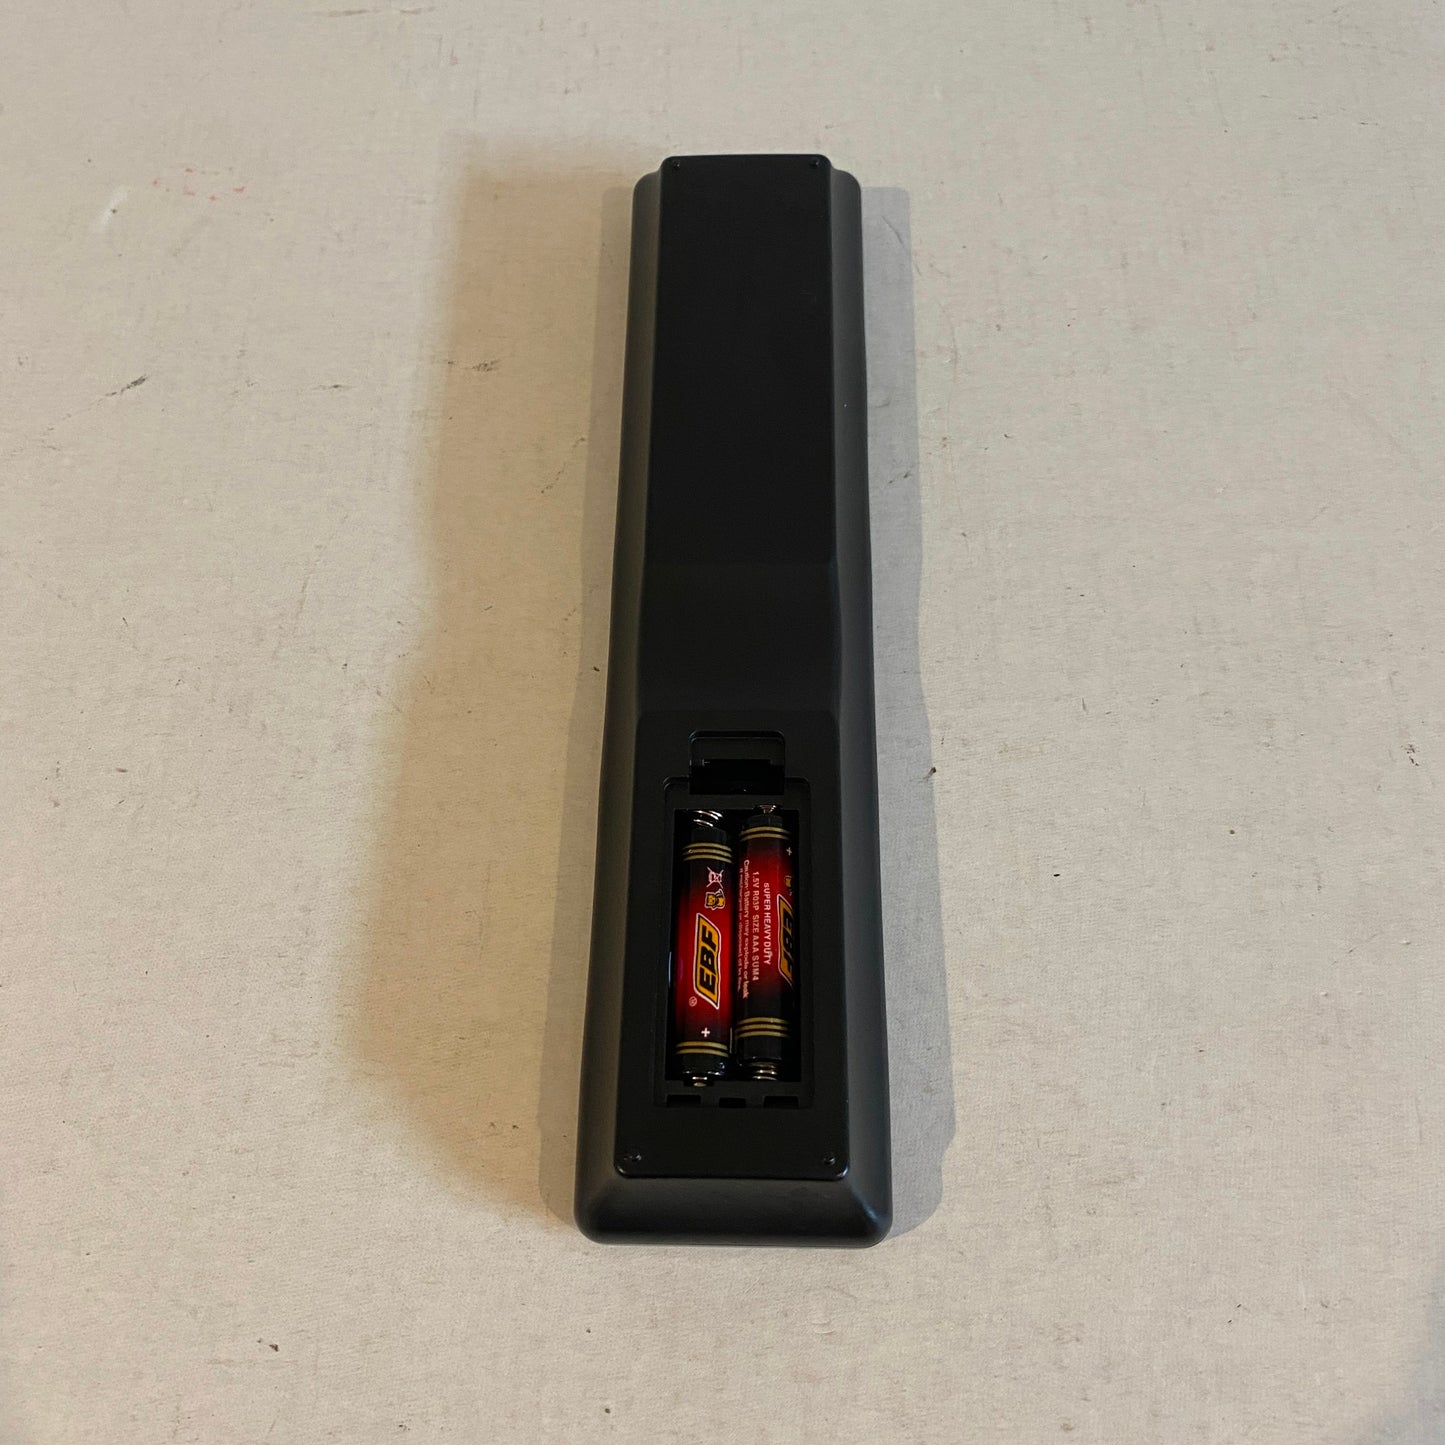 Genuine Denon Audio/Video Receiver Remote Control - No Battery Cover - RC-1227